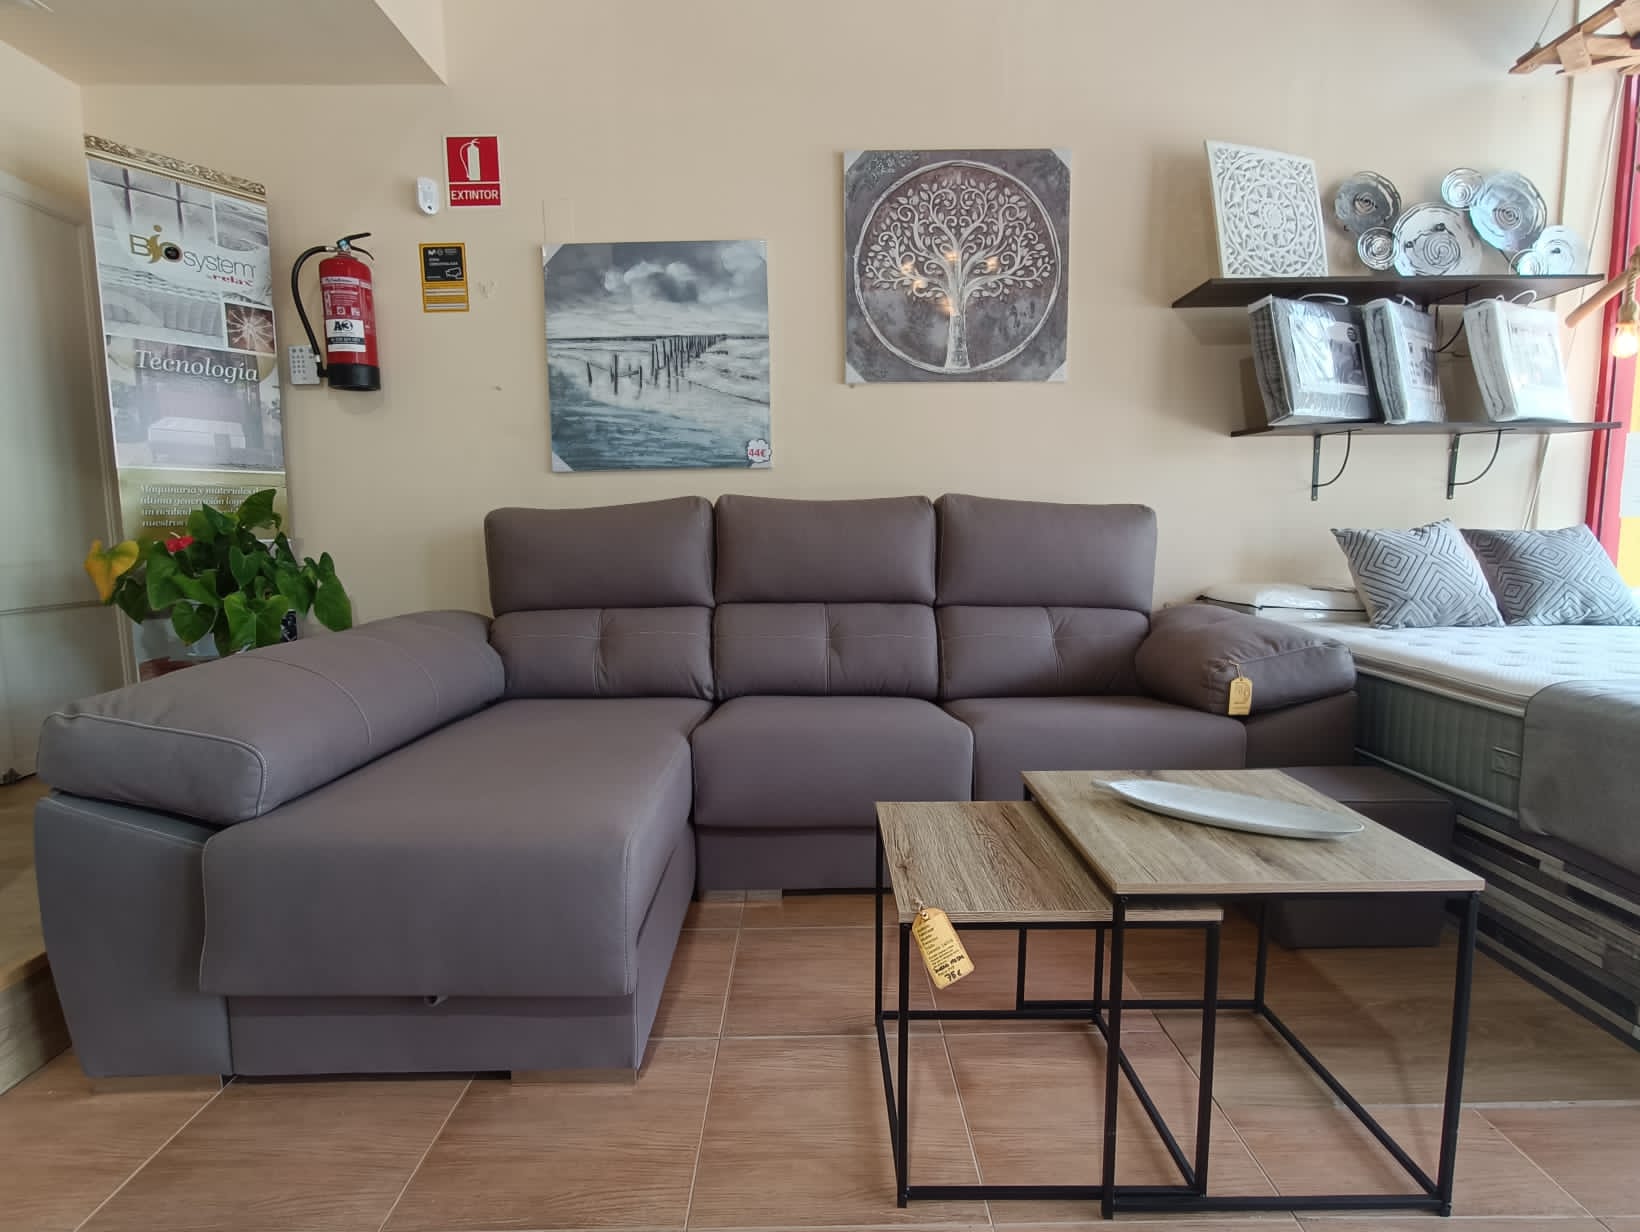 Venta de sofás y colchones en Vilanova